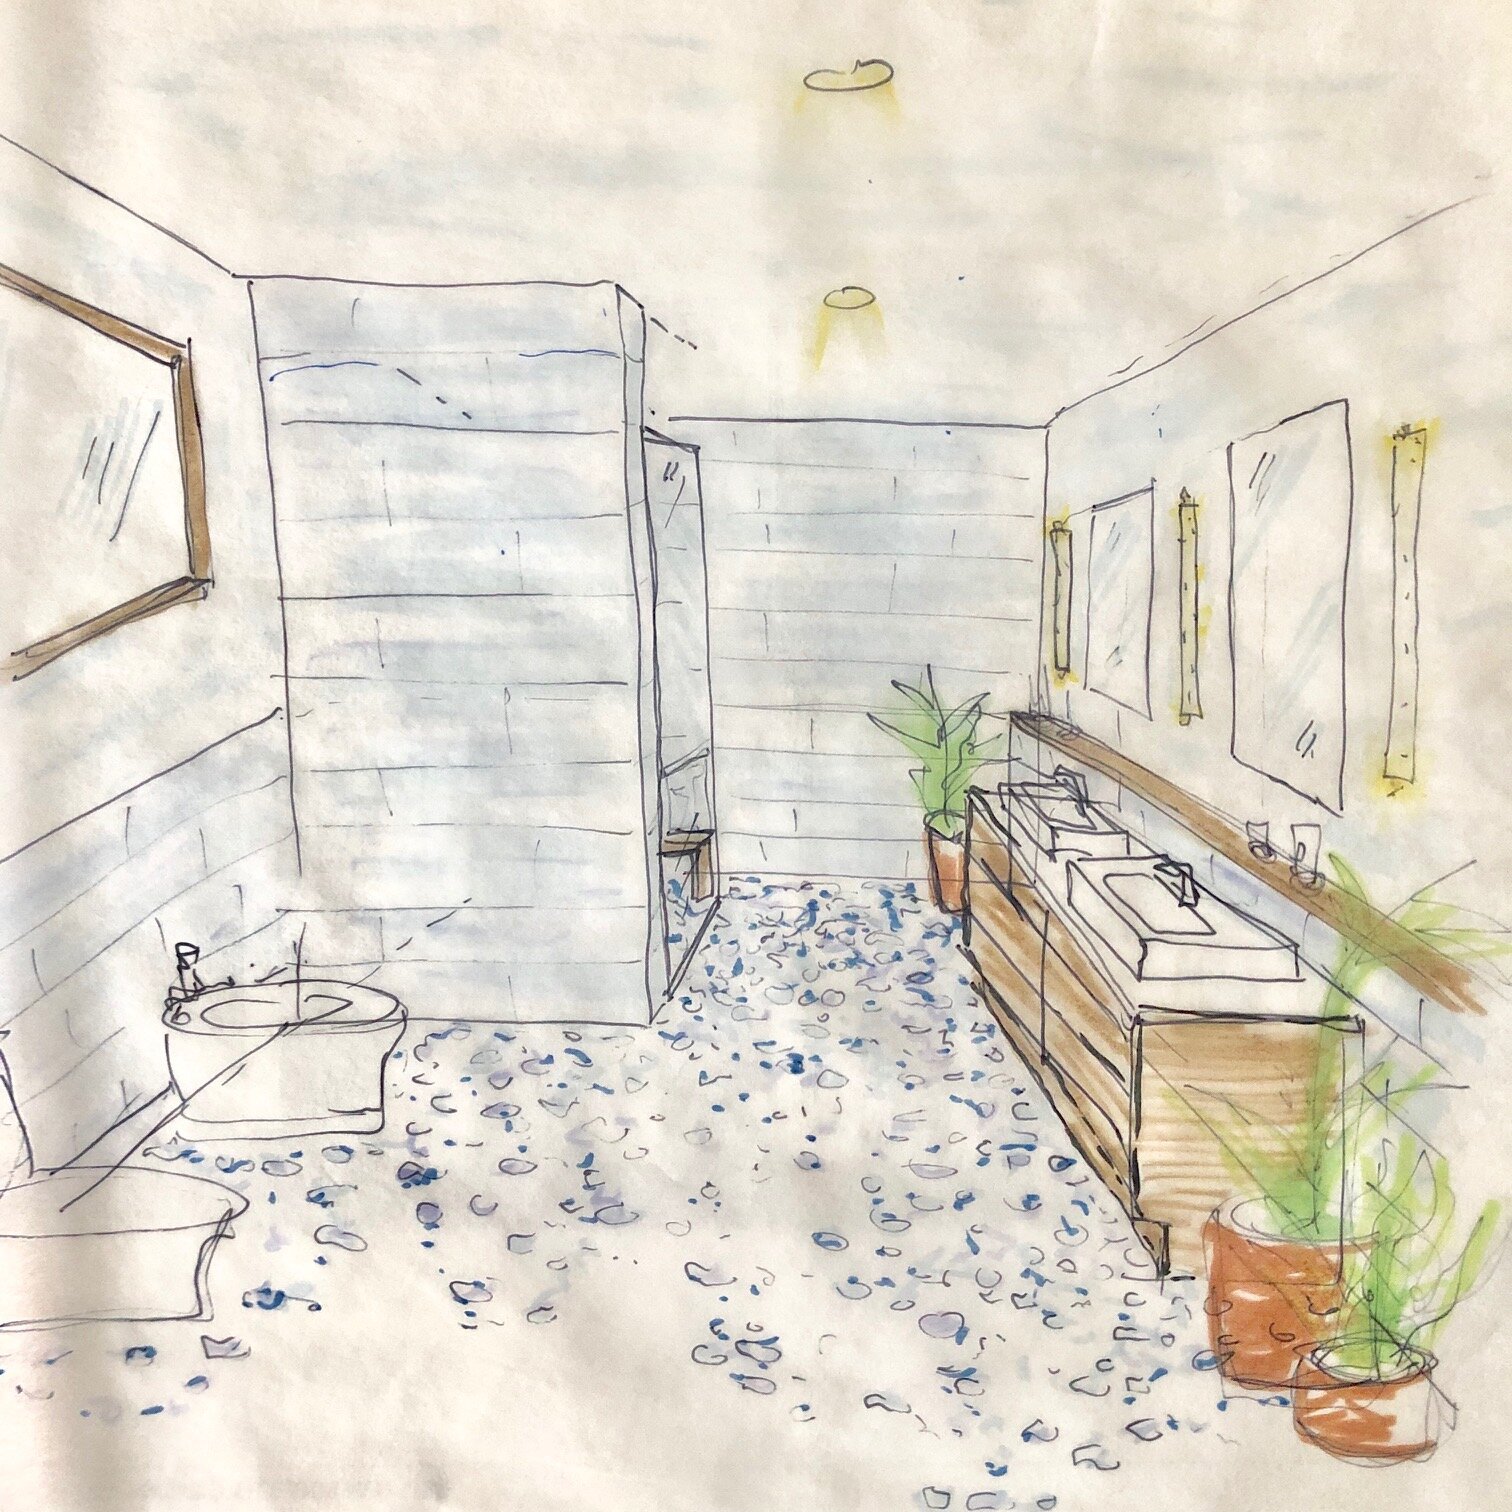 Bathroom Sketch.jpg